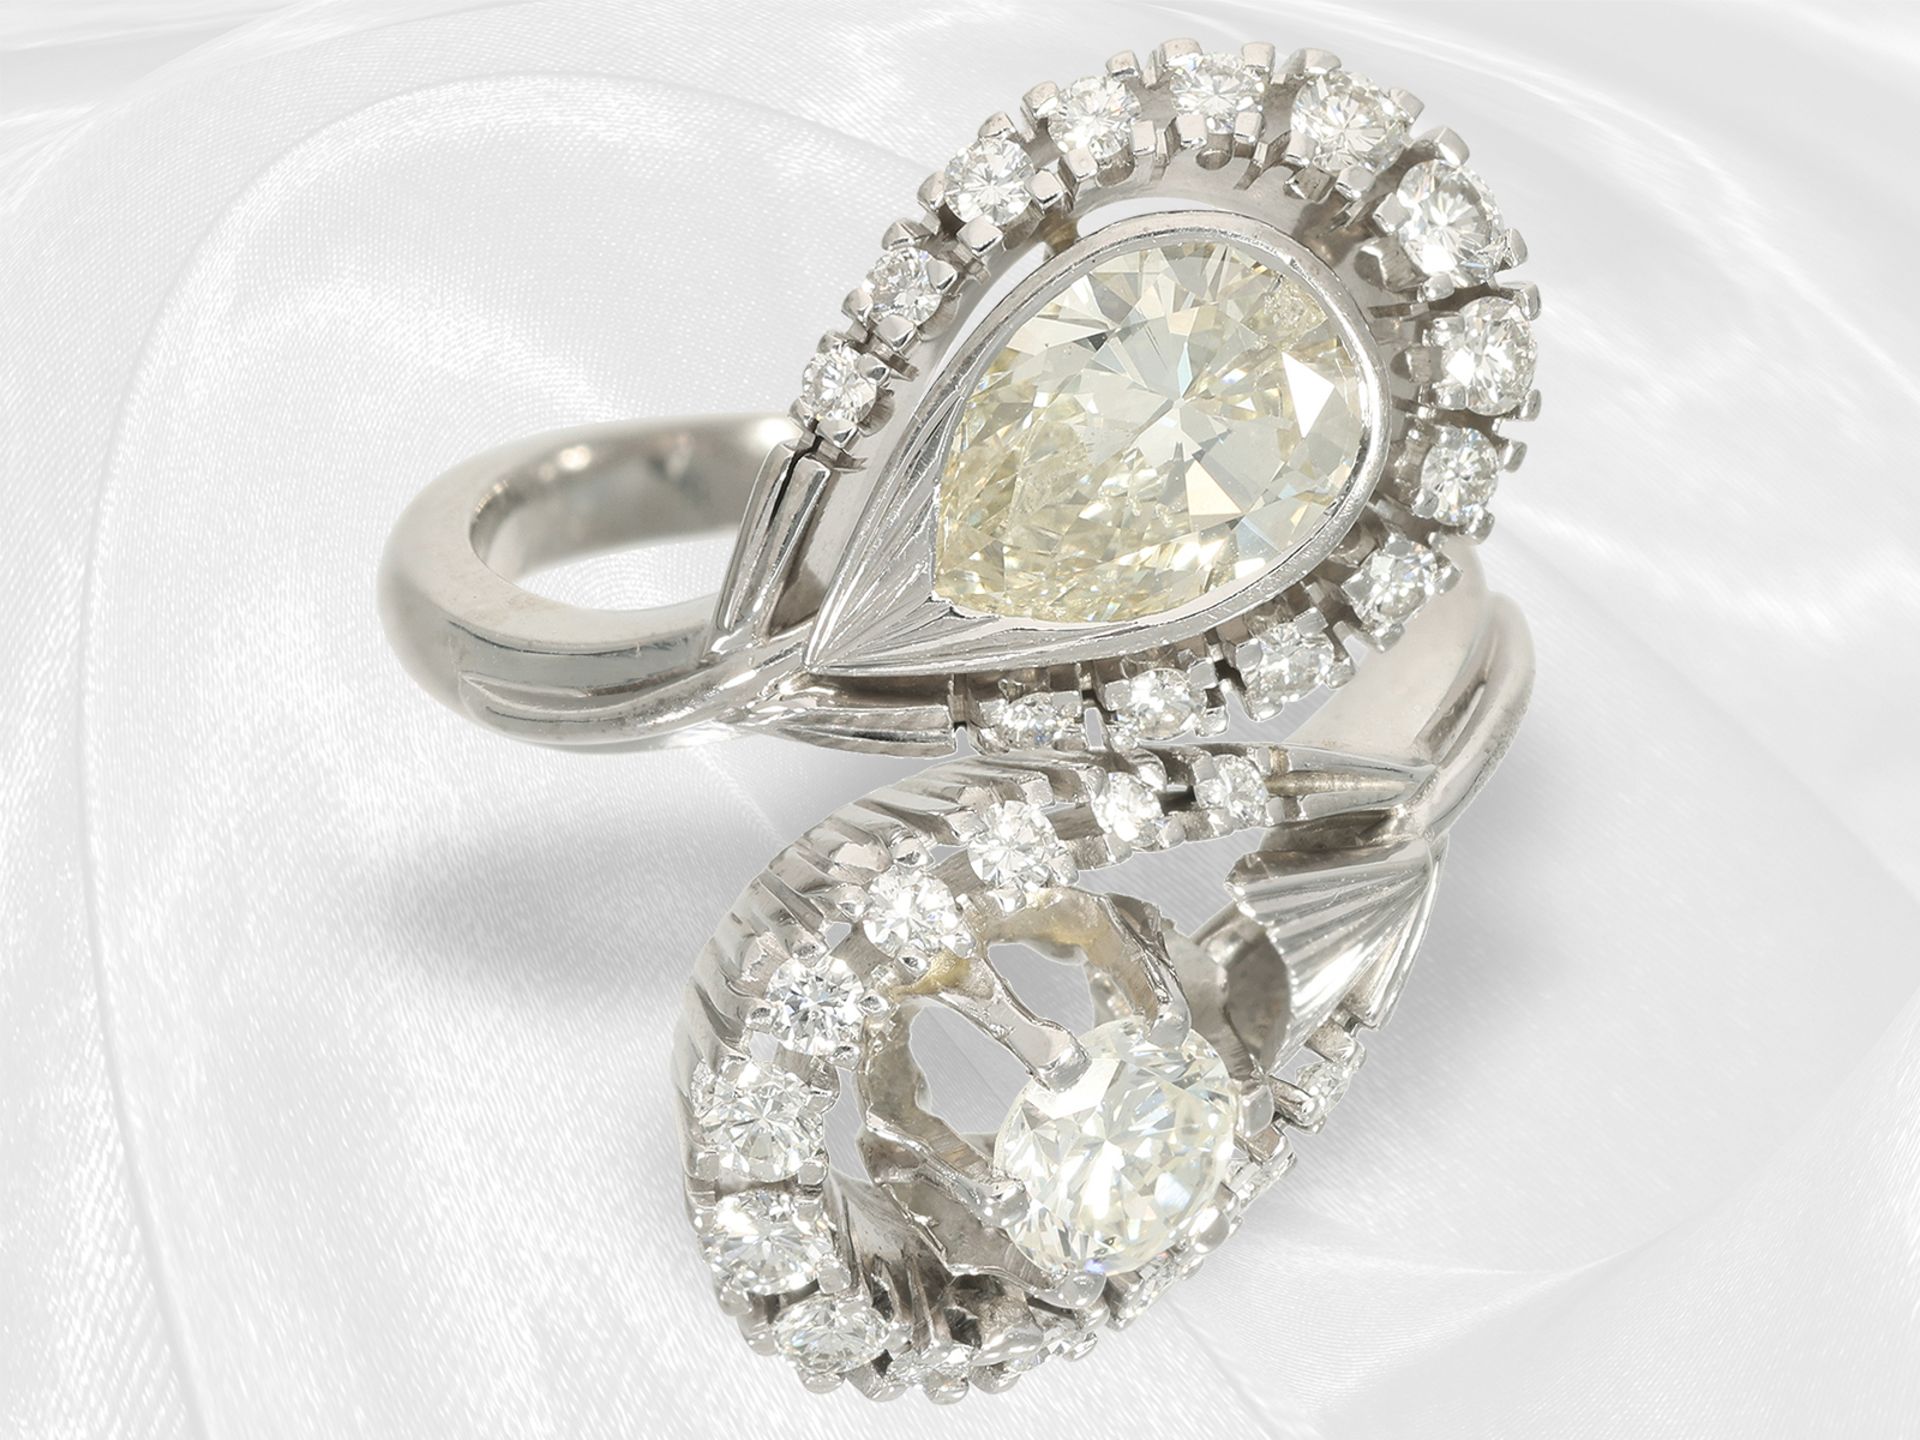 Ring: ausgesprochen schöner vintage Brillantring, großer Tropfen-Diamant, ca. 1,5ct - Bild 3 aus 5